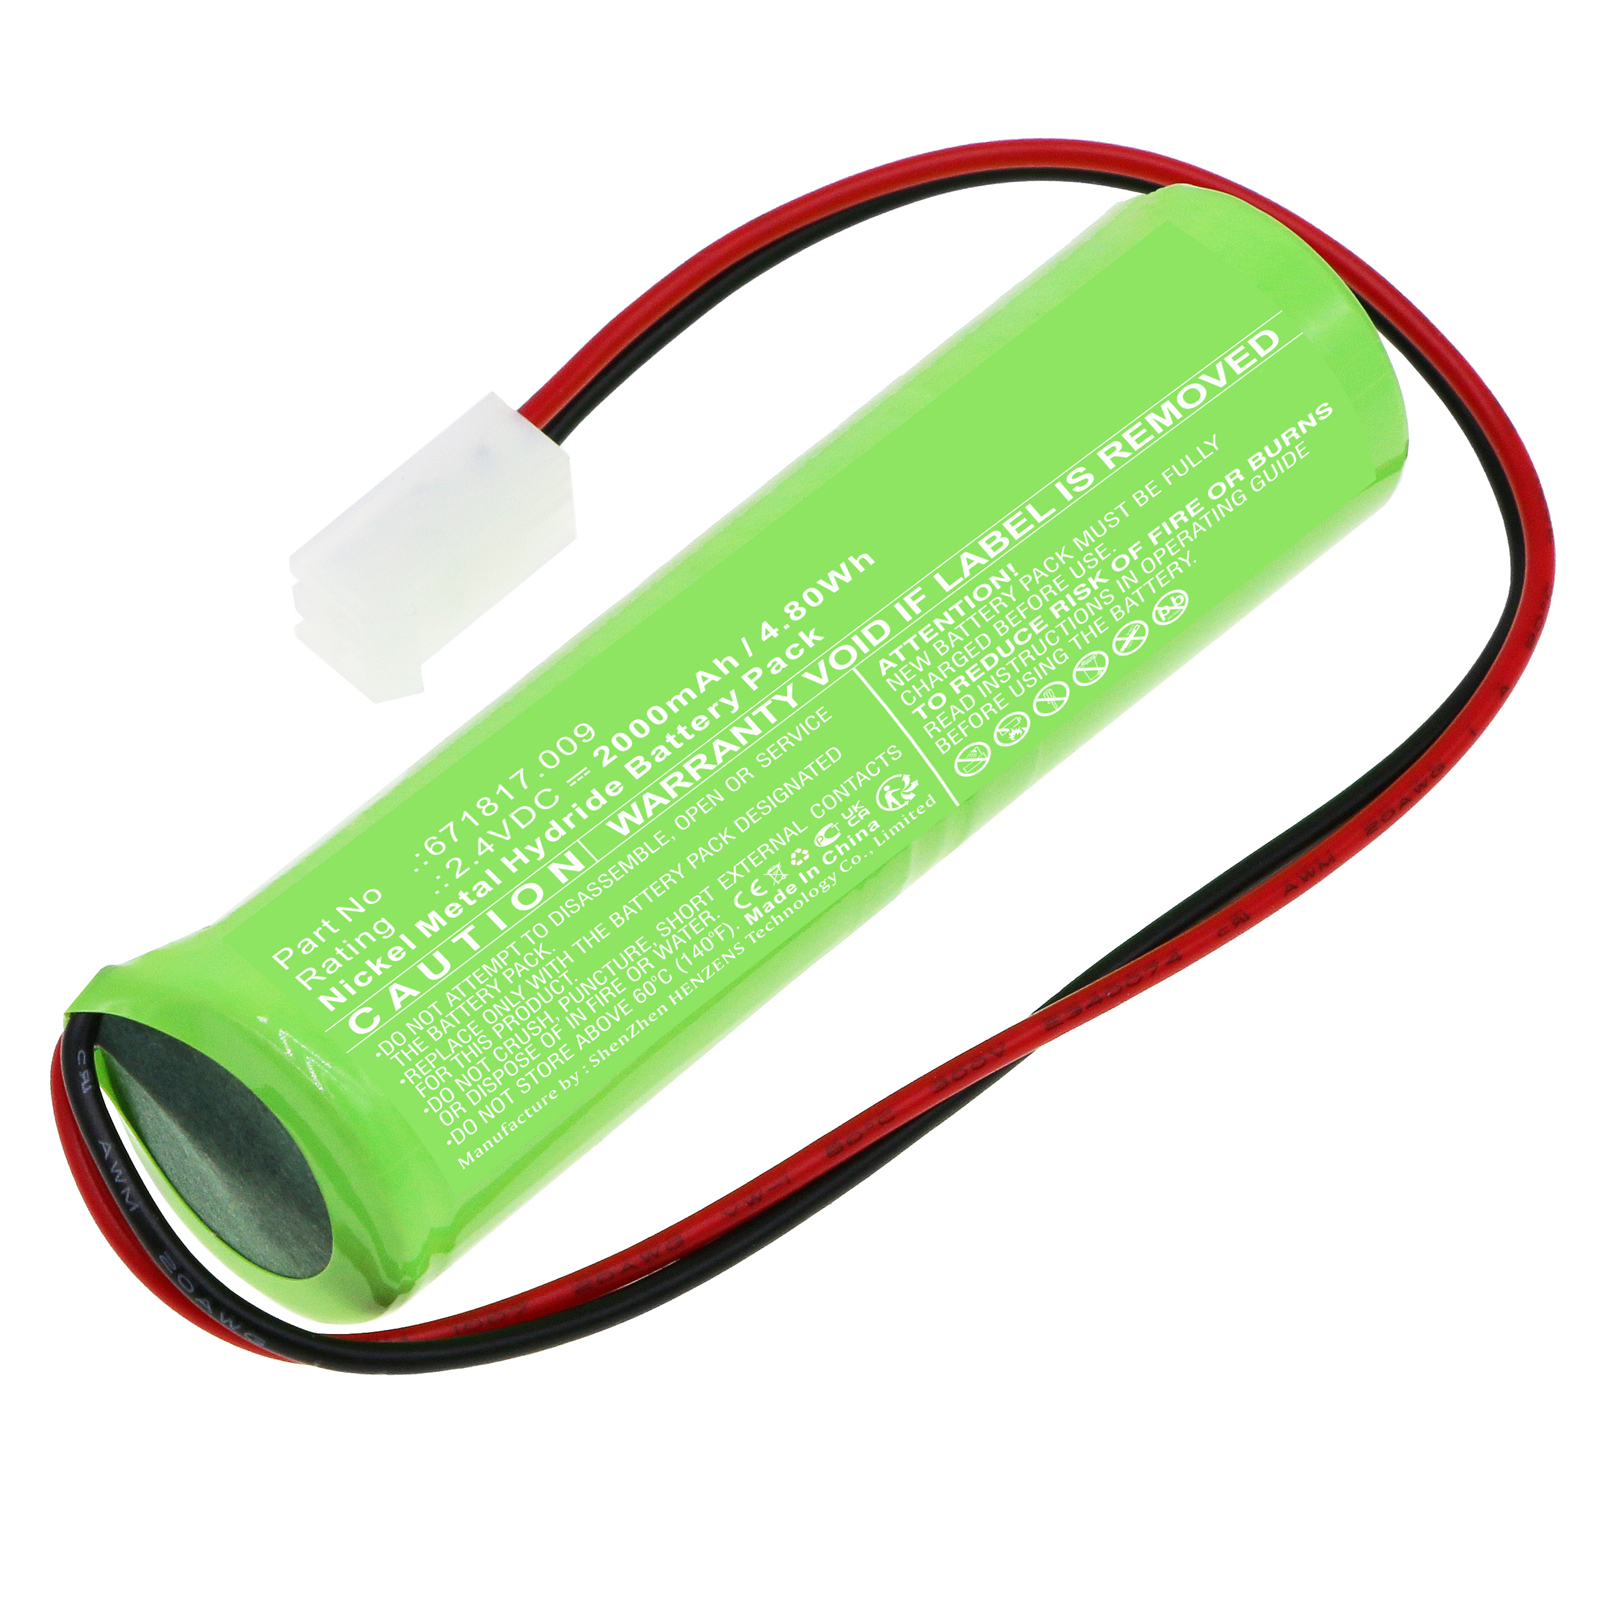 Synergy Digital Emergency Lighting Battery, Compatible with ELUBAT 671817.009 Emergency Lighting Battery (Ni-MH, 2.4V, 2000mAh)